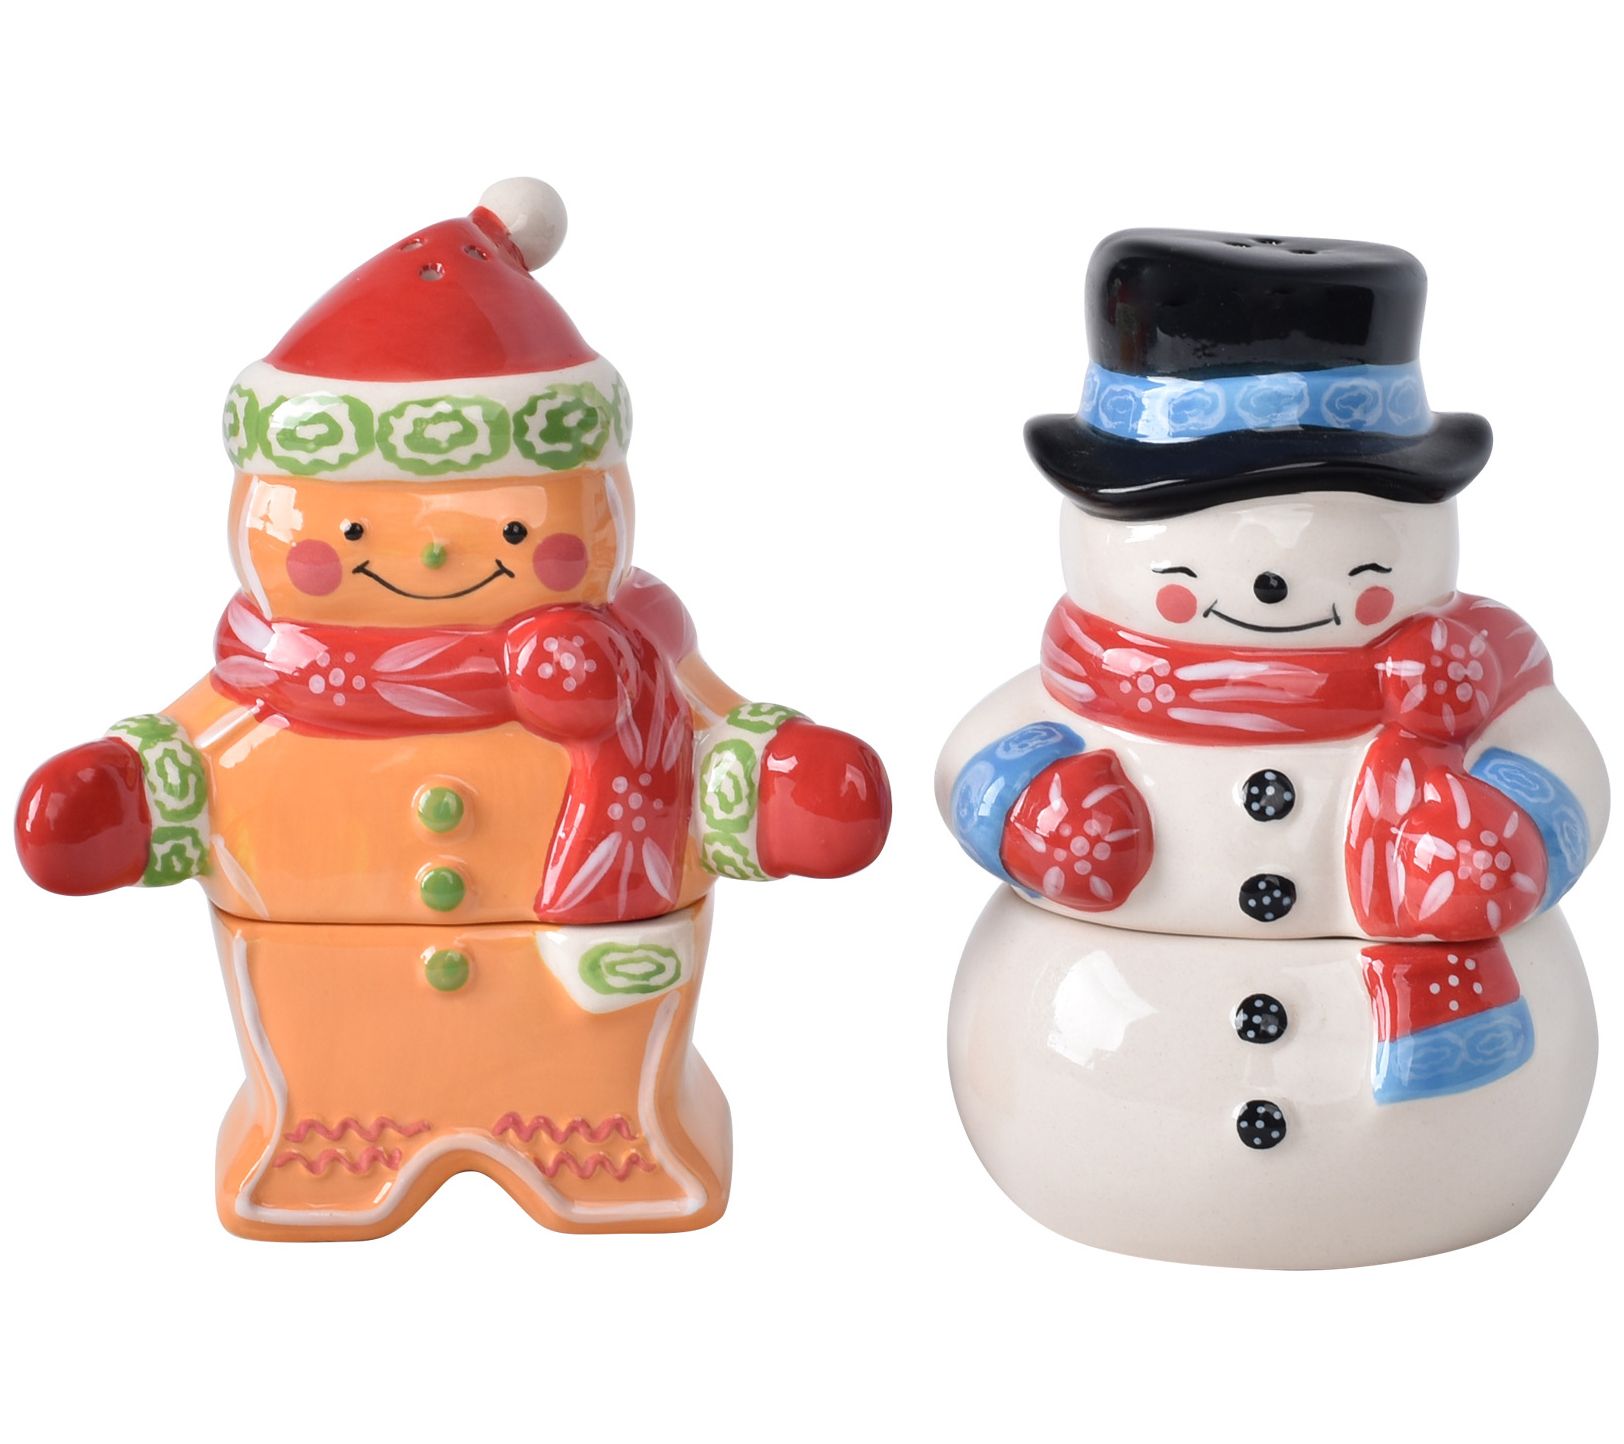 Mr. Christmas 6 Nostalgic Salt & Pepper Shaker Figures 